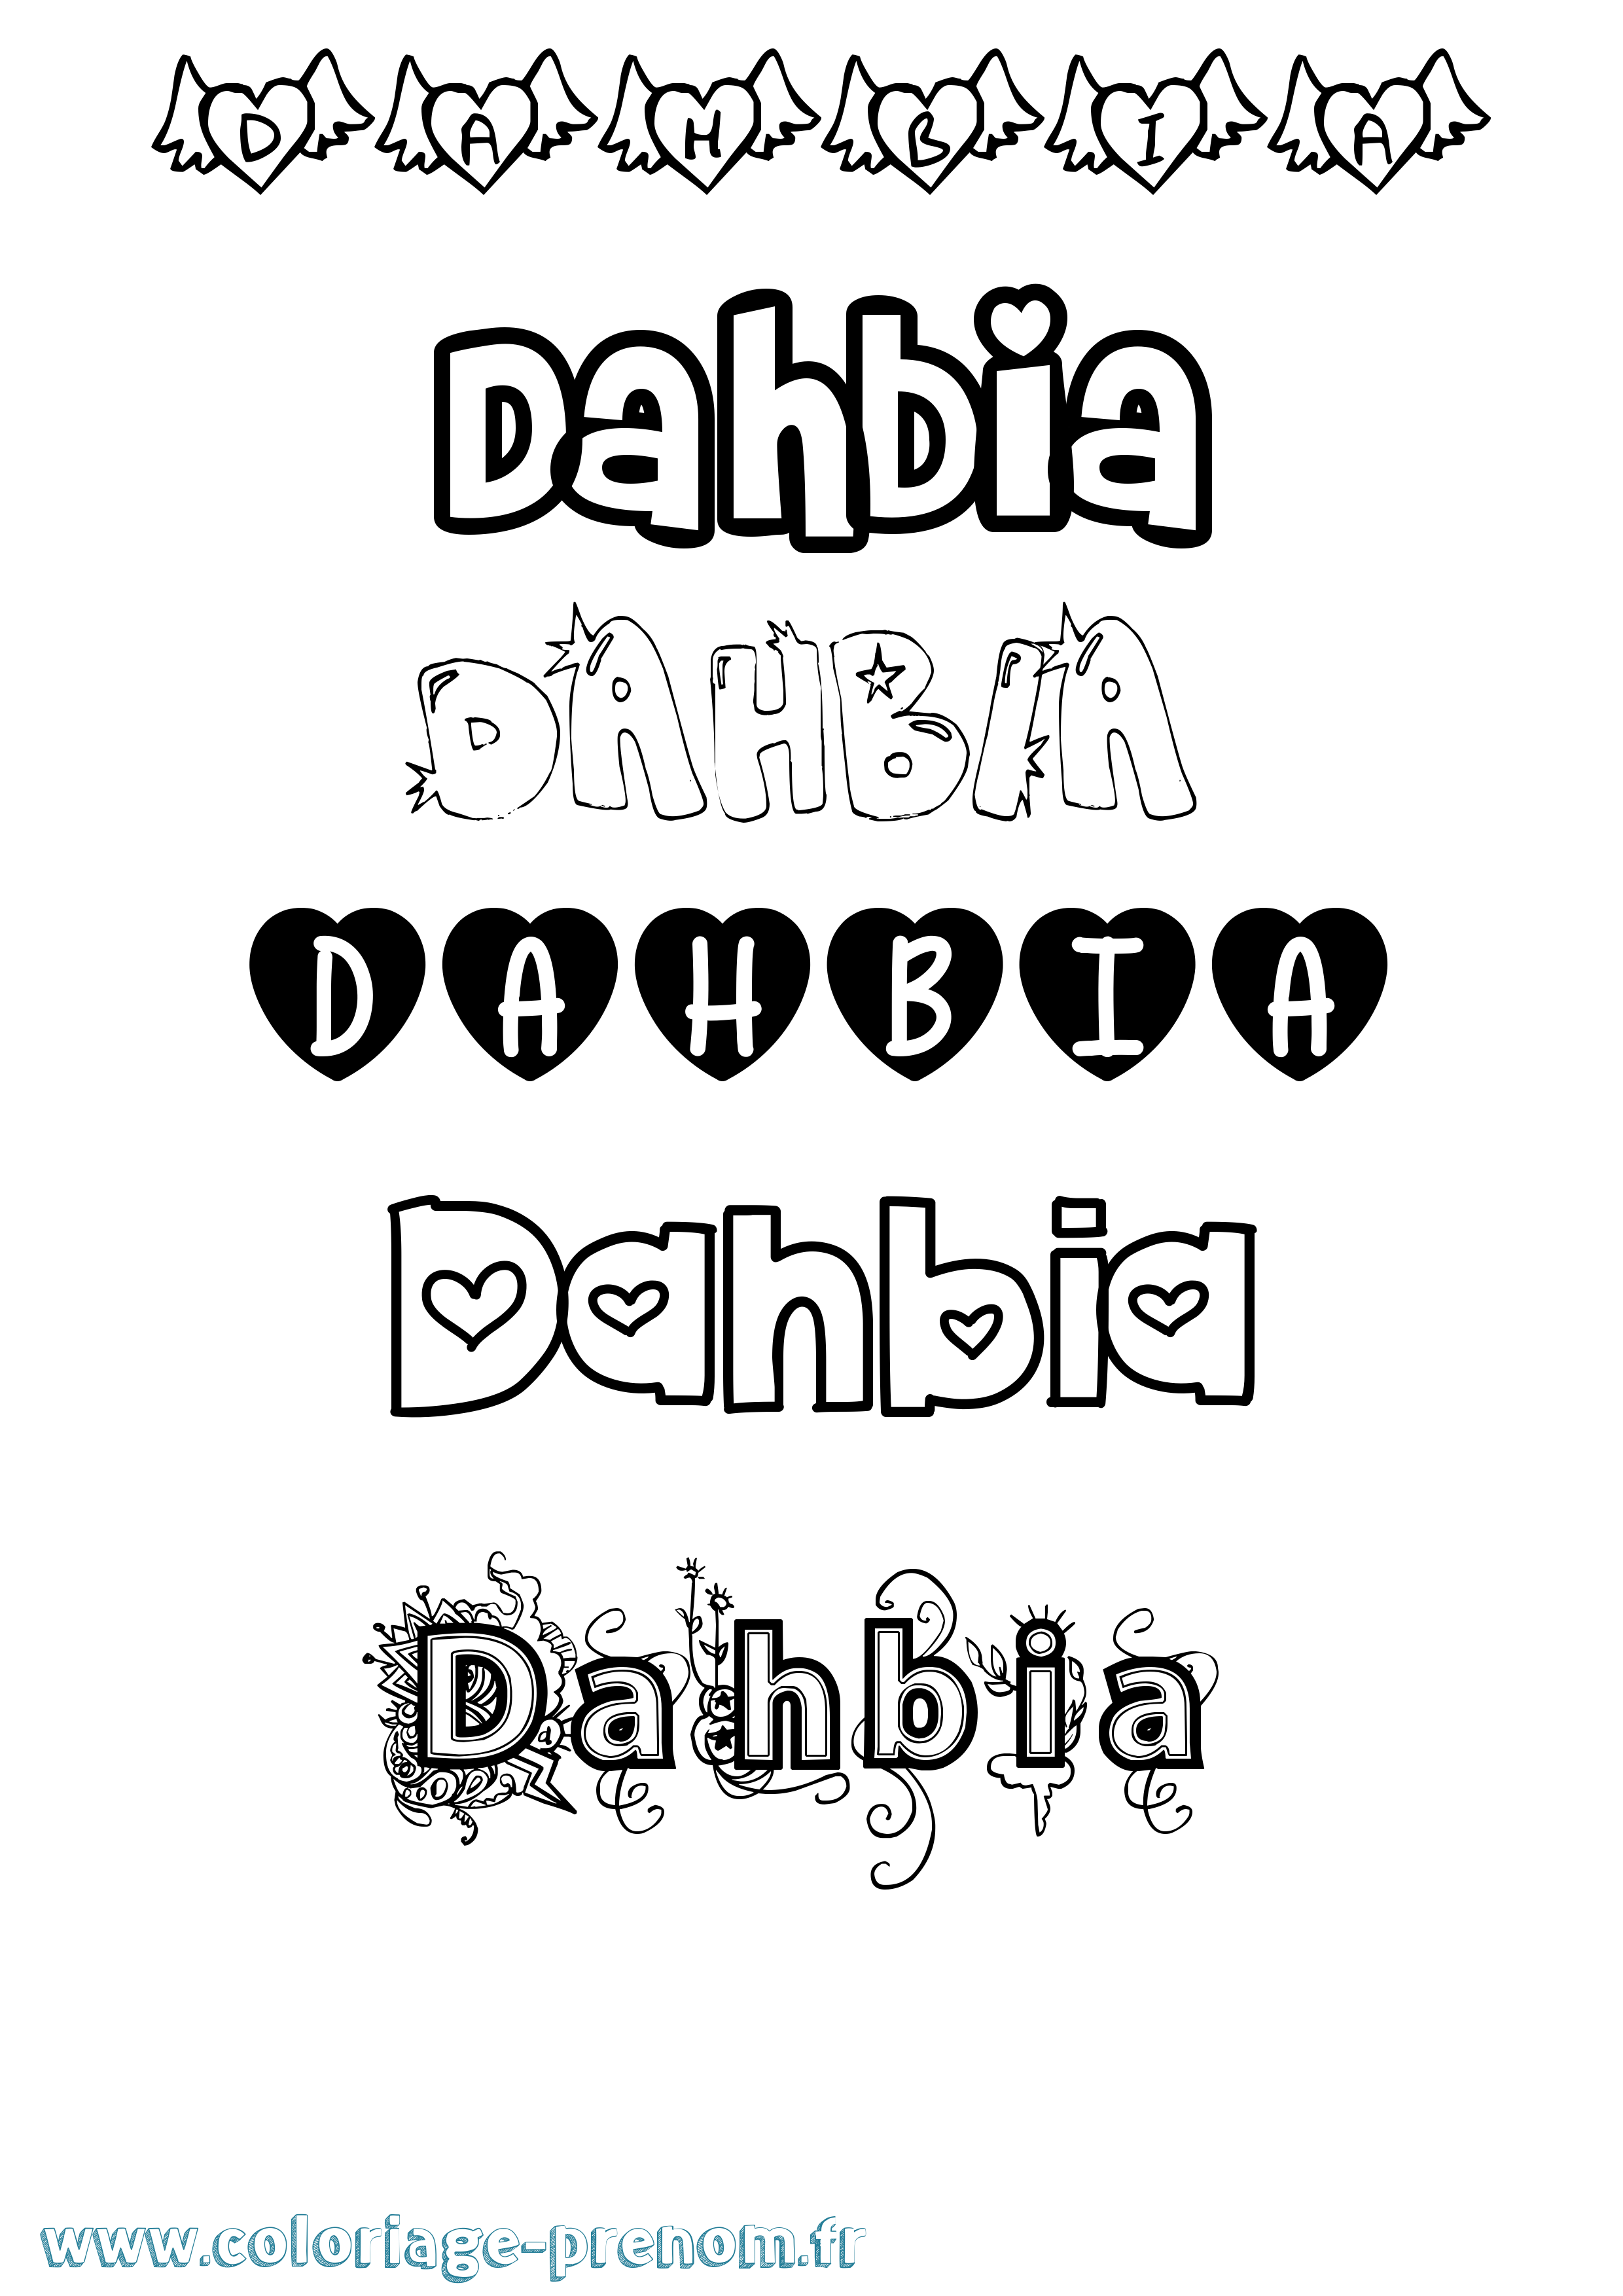 Coloriage prénom Dahbia Girly